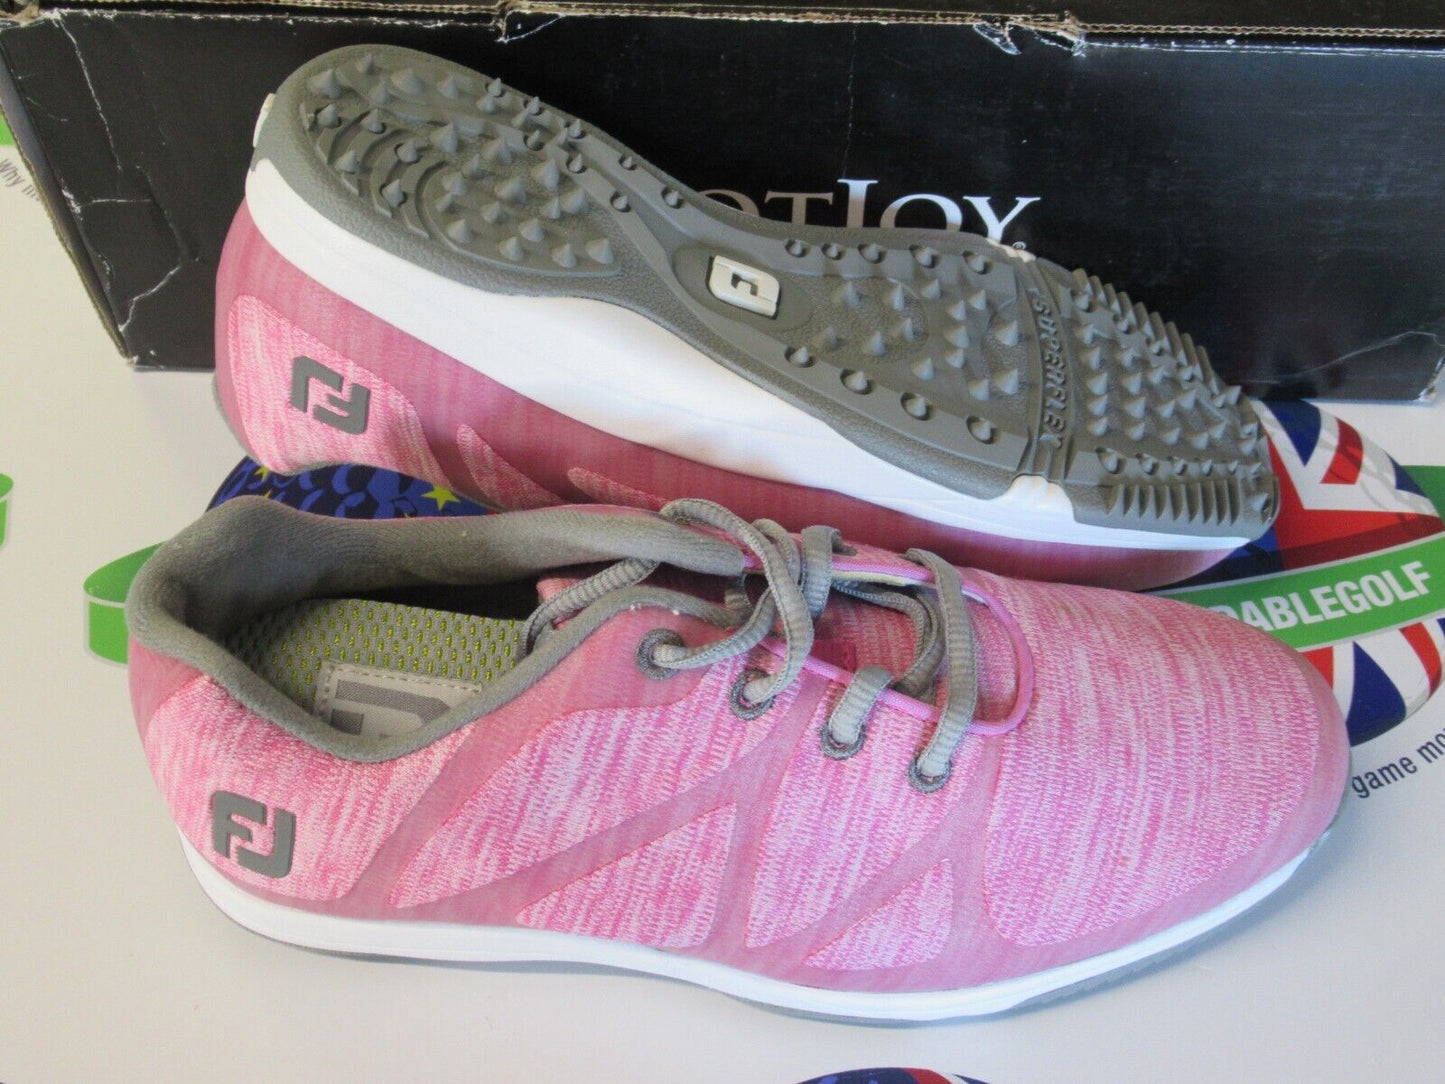 footjoy leisure ladies golf shoes pink/white/grey 92906k uk size 4 L